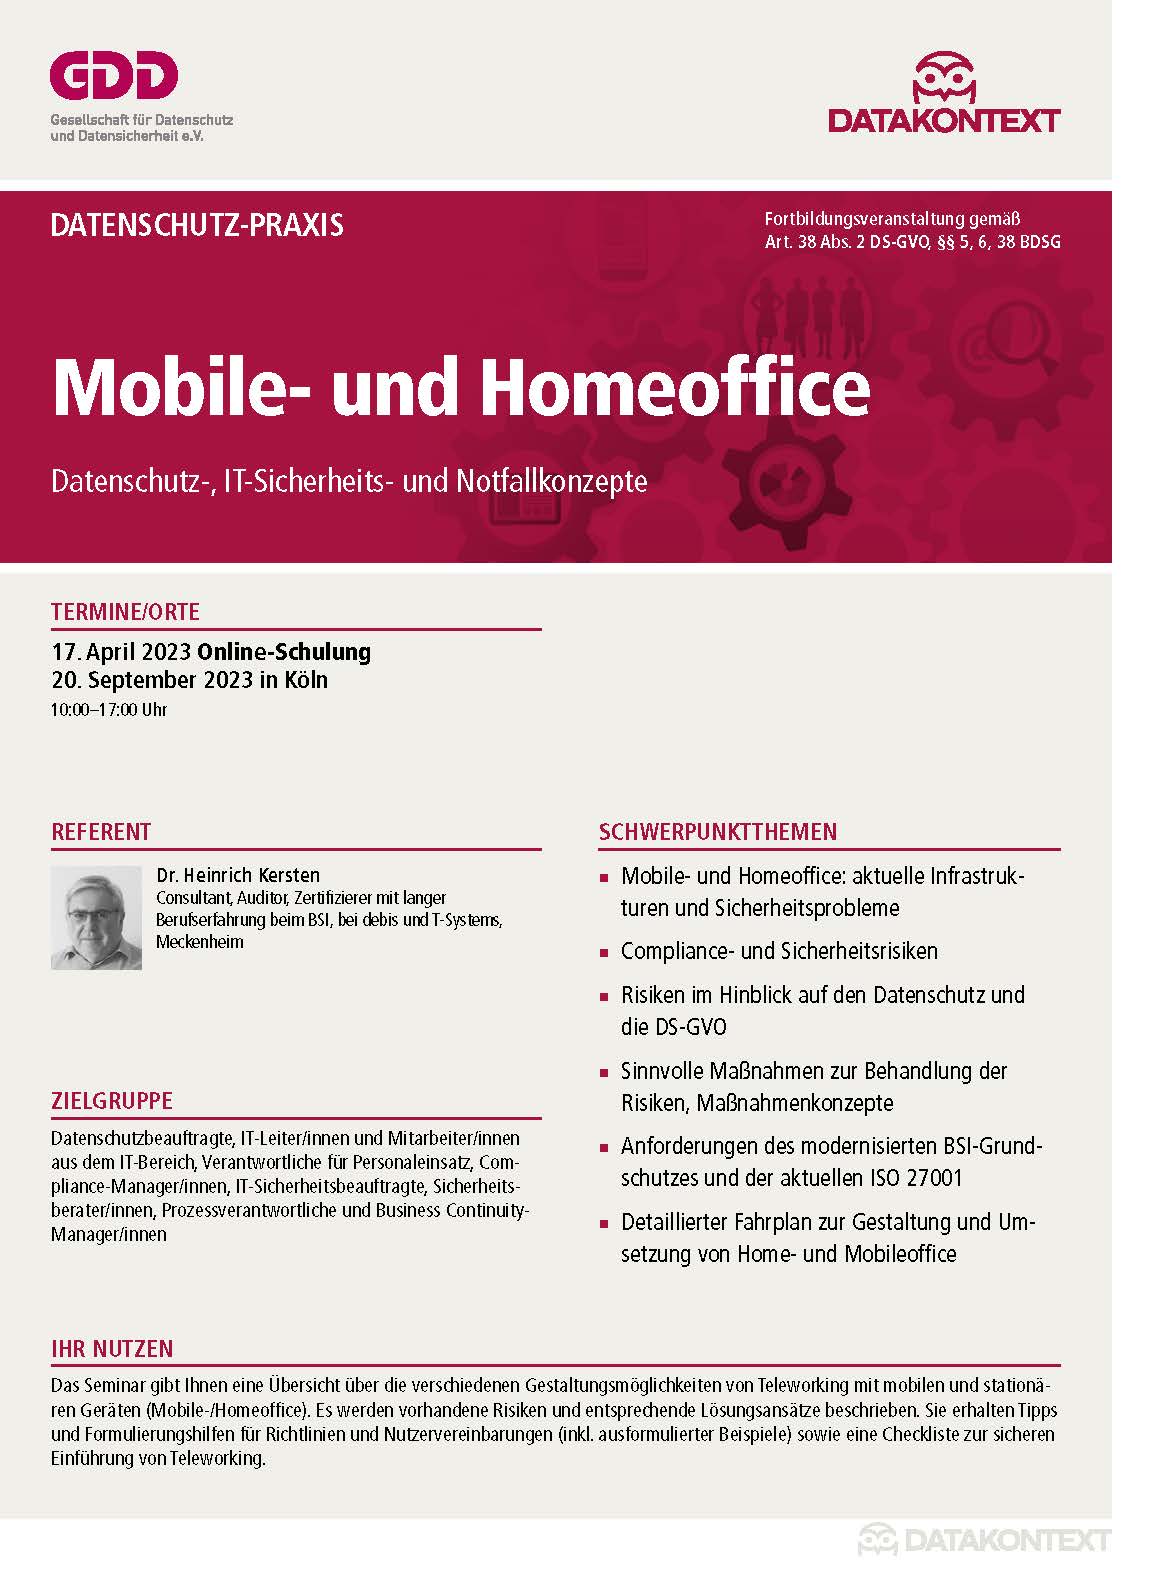 Mobile- und Homeoffice